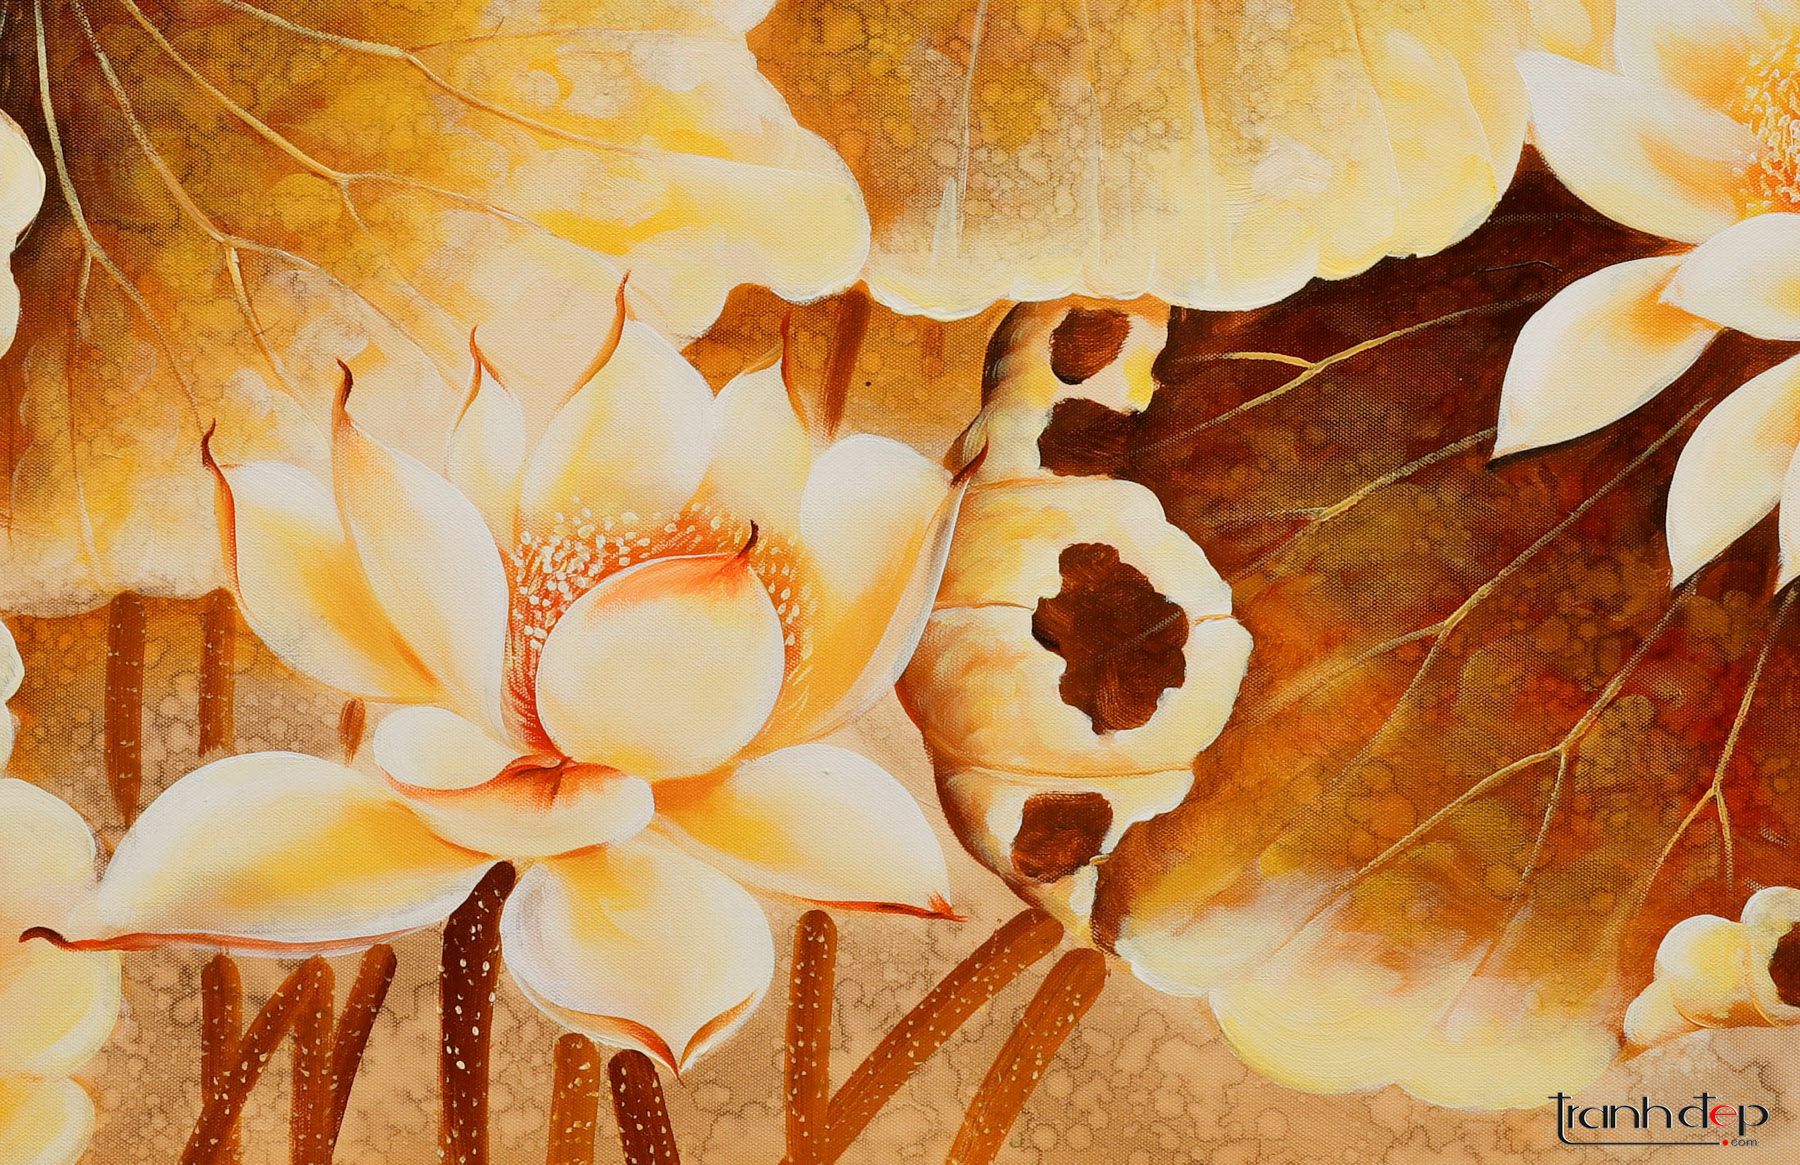 Tranh vẽ hoa sen là một tác phẩm nghệ thuật tuyệt đẹp với những nét vẽ tinh tế, sắc nét. Nếu bạn yêu thích hoa sen và nghệ thuật, hãy xem ngay bức tranh vẽ hoa sen để chiêm ngưỡng vẻ đẹp hoàn hảo của nó. Bức tranh này sẽ làm cho không gian sống của bạn thêm phần sang trọng và tinh tế.